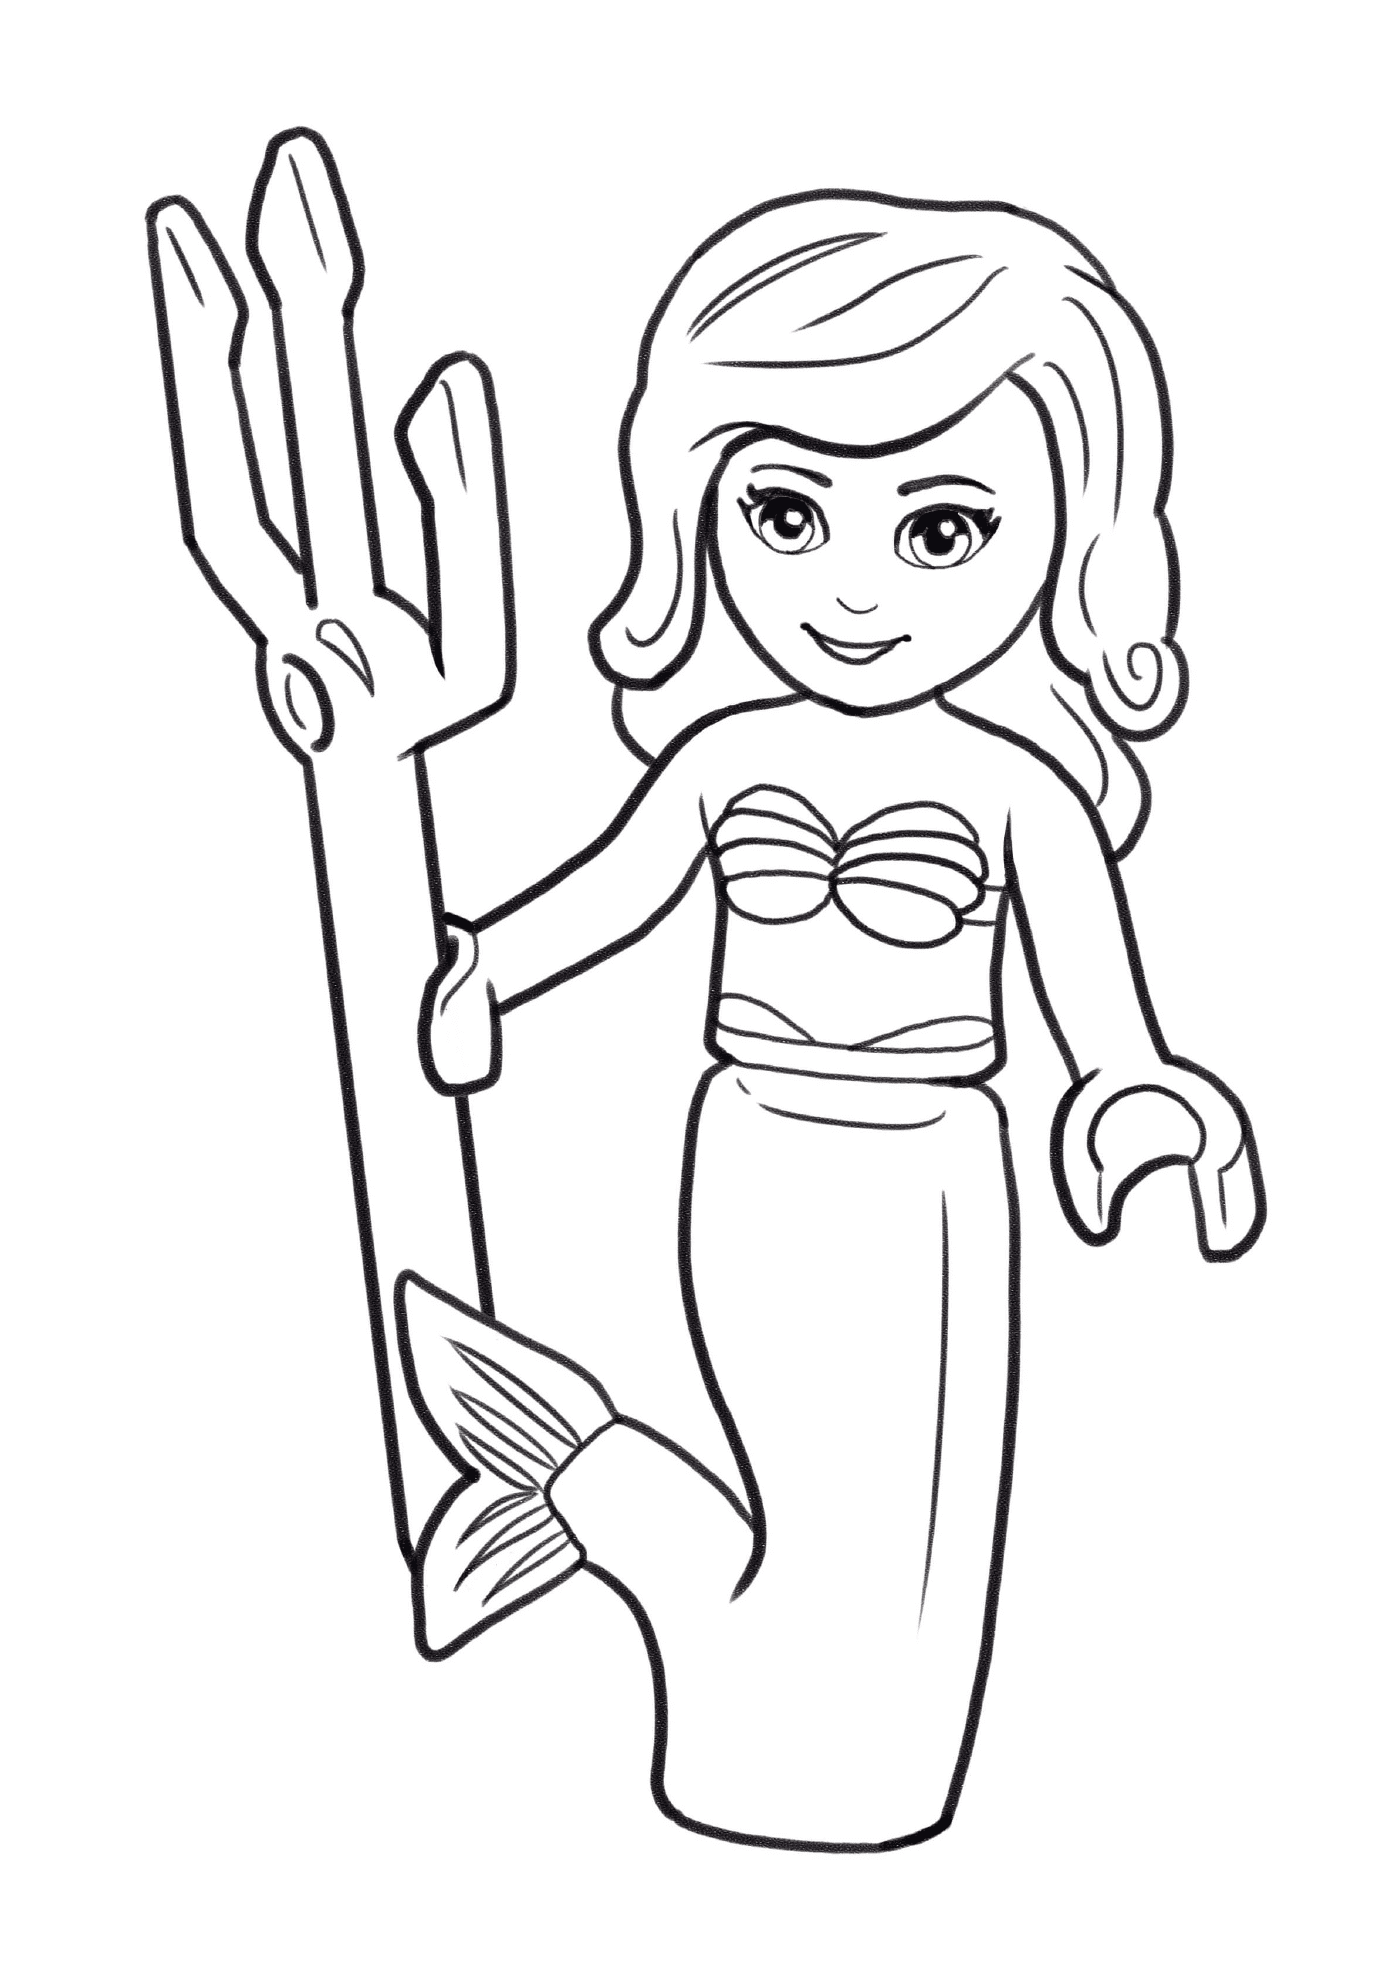  Eine Lego Meerjungfrau, die einen Dreizack hält 